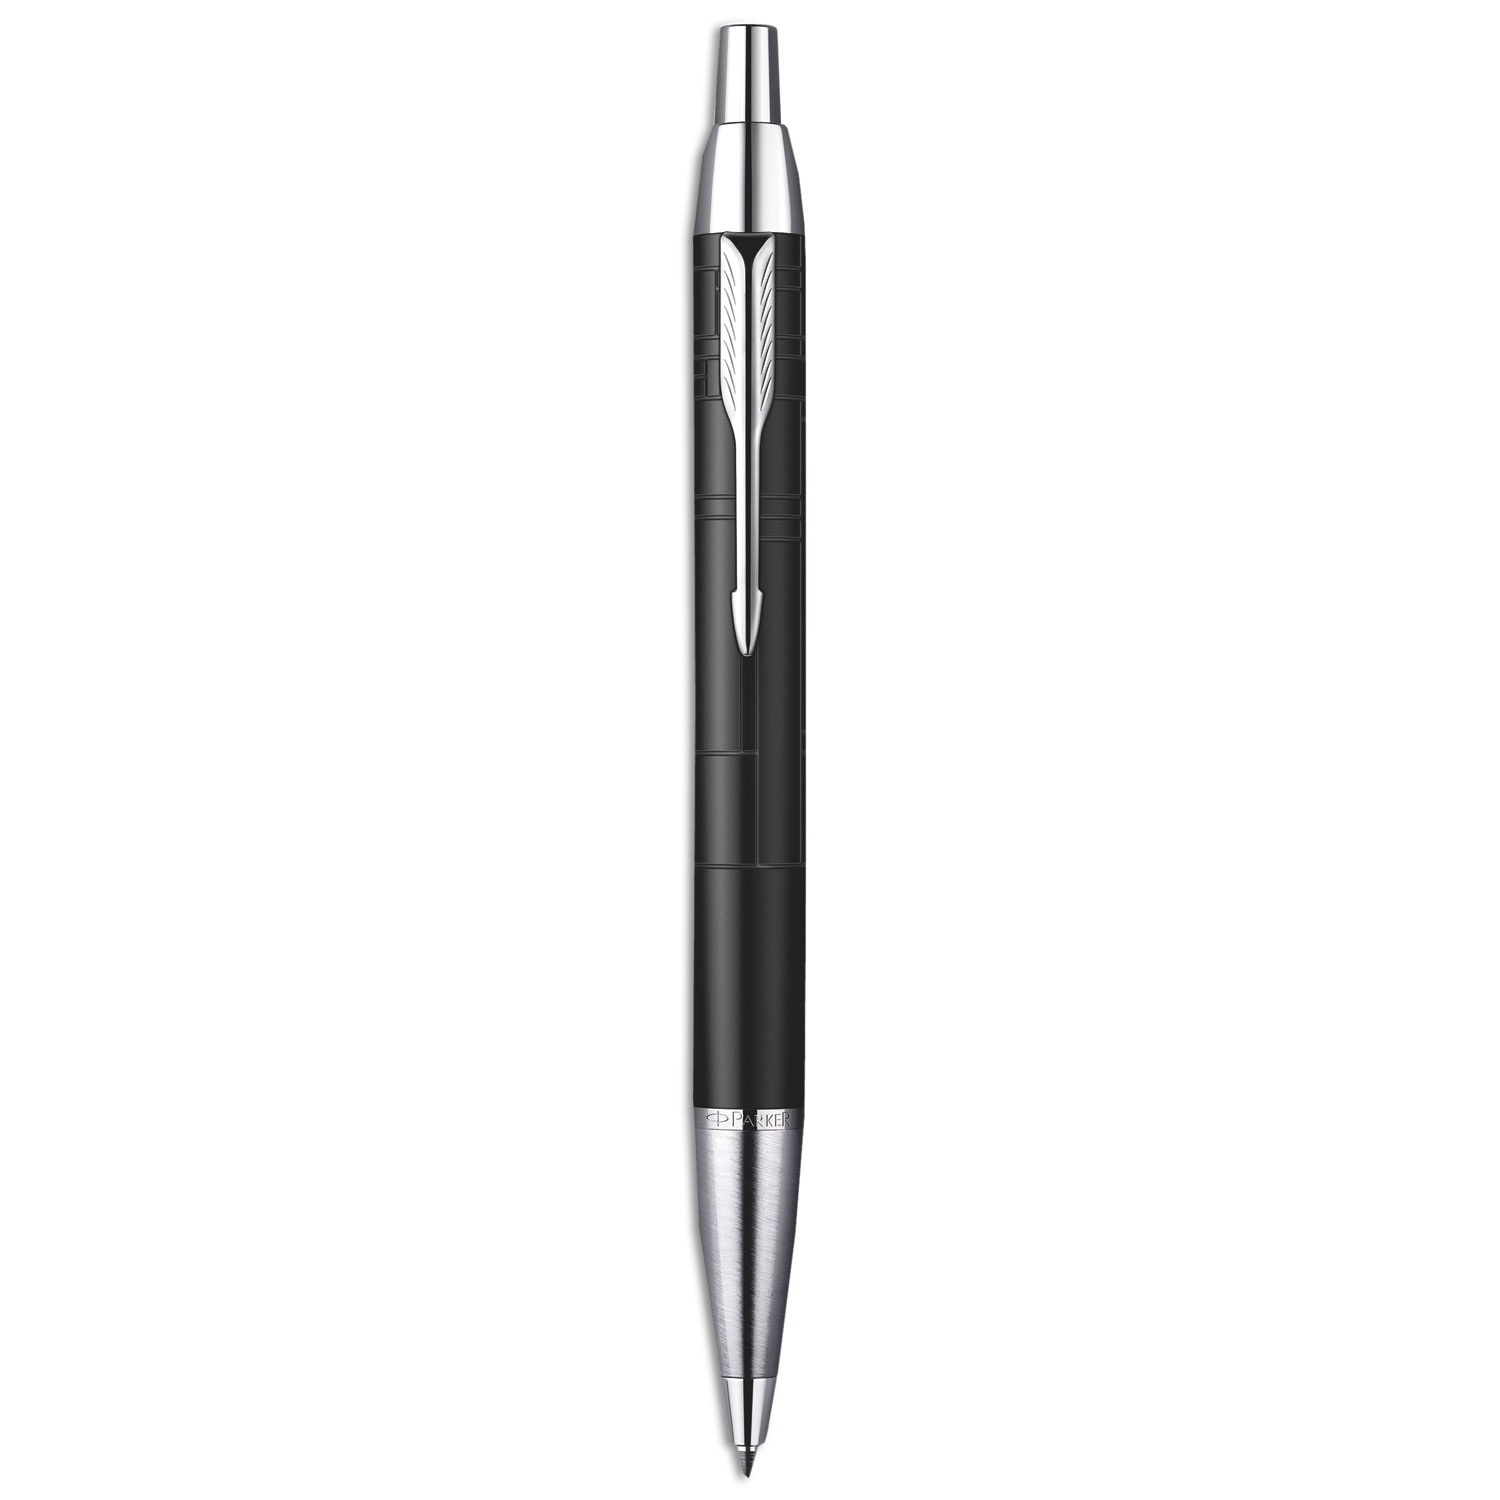  Parker 1975553 IM Retractable Ballpoint Pen Gift Box, 0.5mm, Black Ink, Black/Chrome Trim Barrel (PAR1975553) 